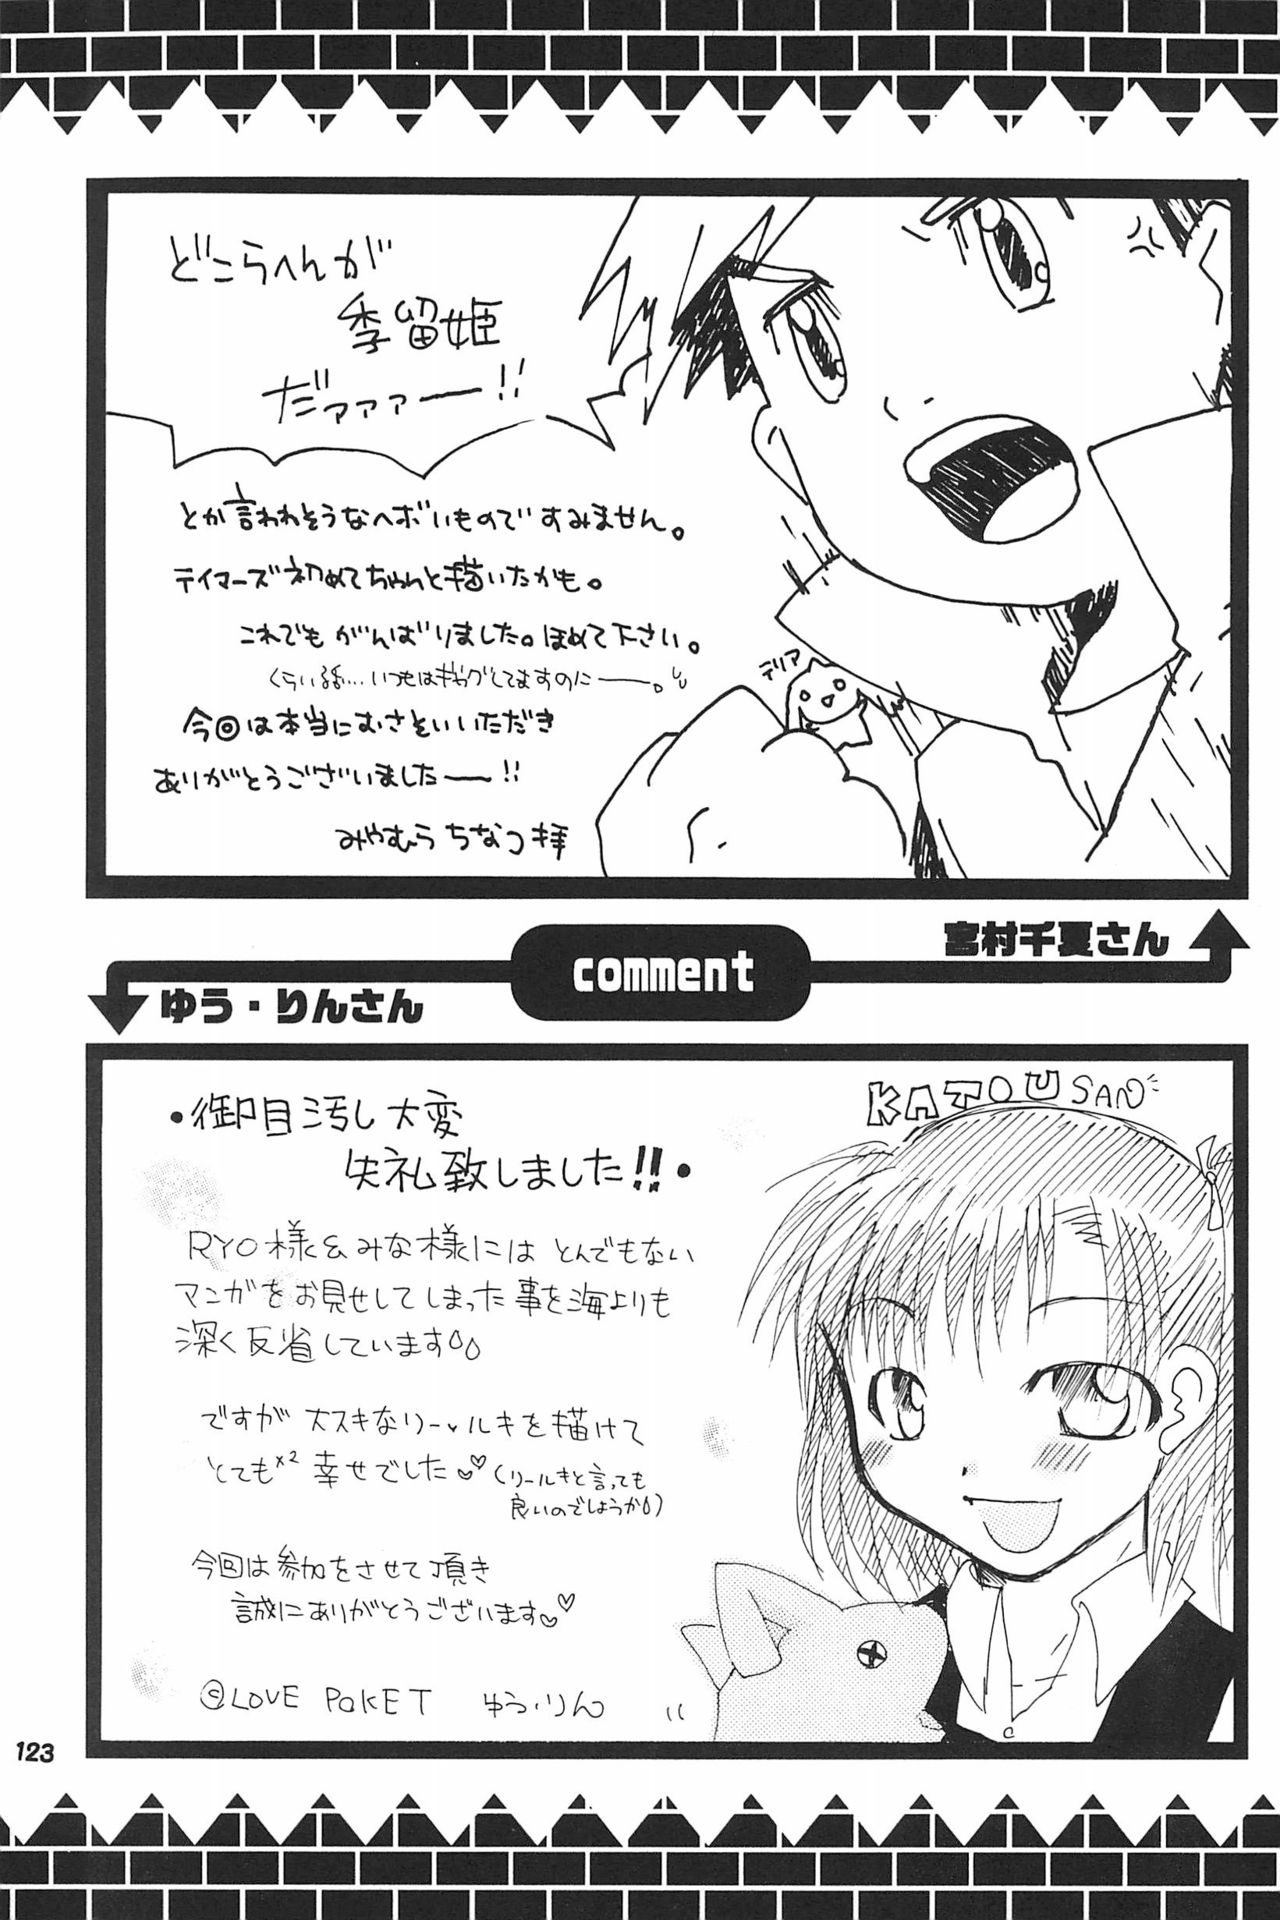 (SC15) [LeeRuki Anthology Jikkou Iinkai (Various)] LeeRuki Anthology J&R REPORT (Digimon Tamers) 124